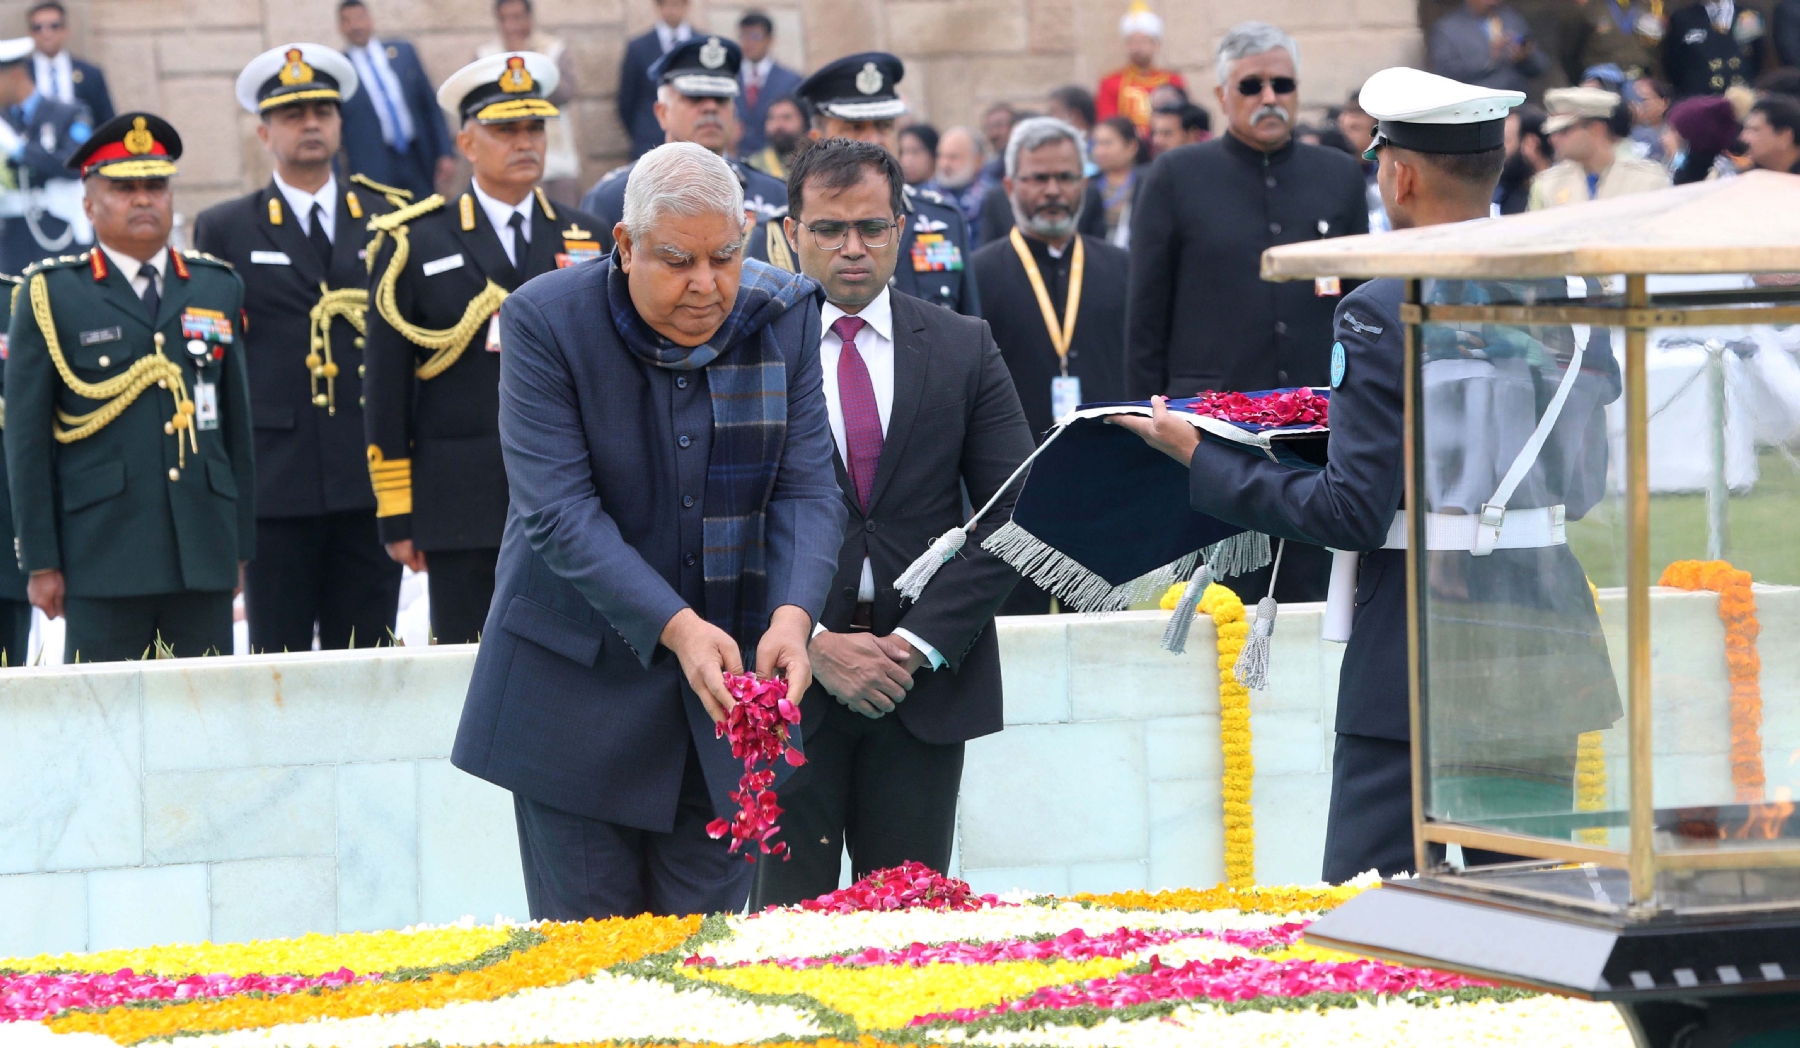 नई दिल्ली में समवार 30 जनवरी 2023 को उपराष्ट्रपति जगदीप धनखड़ ने शहीद दिवस के अवसर पर गांधी स्मृति में श्रद्धांजलि अर्पित के बाद परिक्रमा करते हुए। हिन्दुस्थान समाचार/ फोटो गणेश बिष्ट 